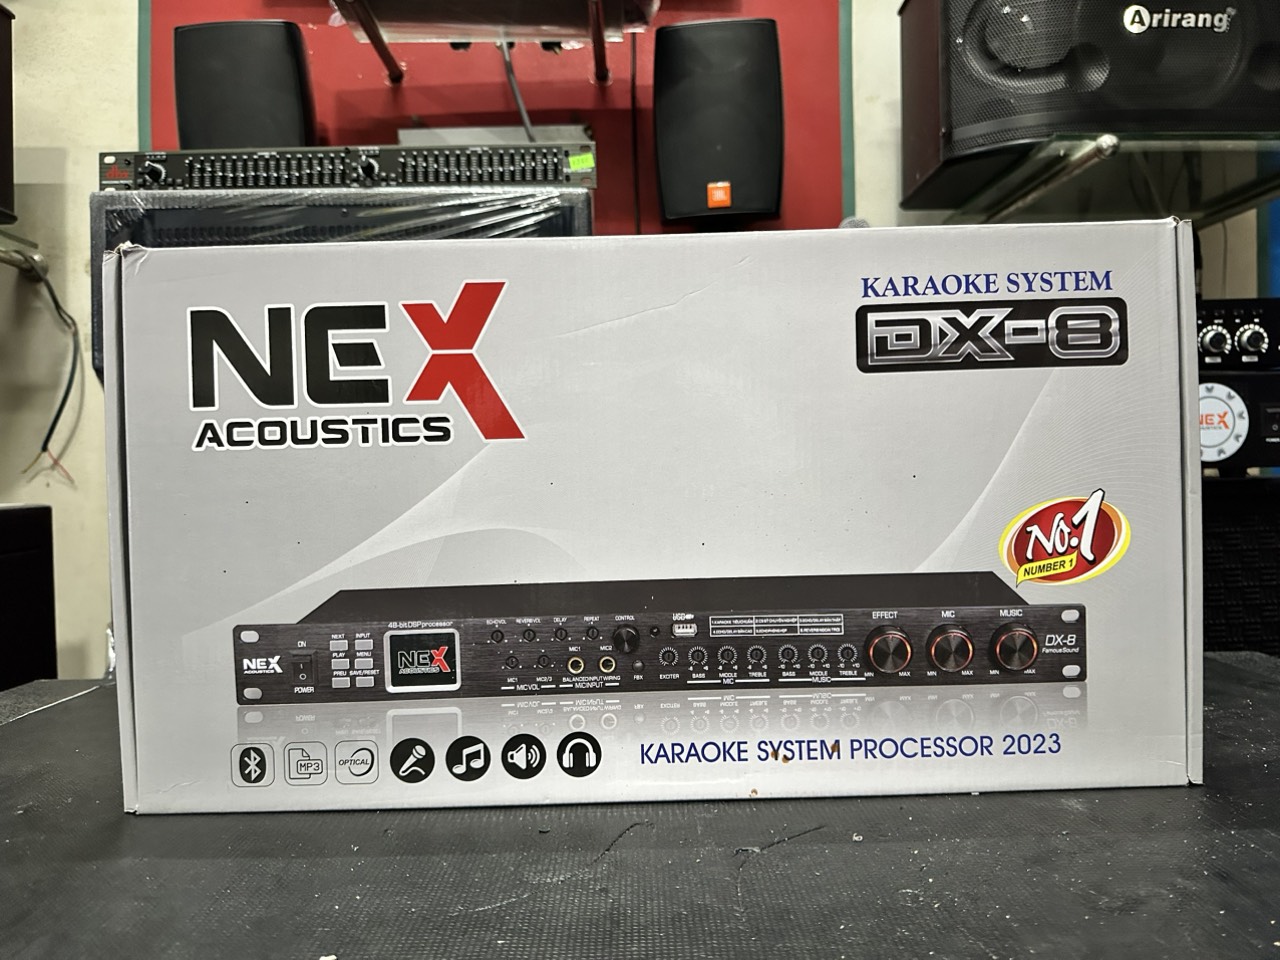 Vang Cơ lai số NEX Acountics DX 8 - Tích hợp sẳn 6 chương trình Micro karaoke Chuyên Nghiệp - Âm thanh cực hay